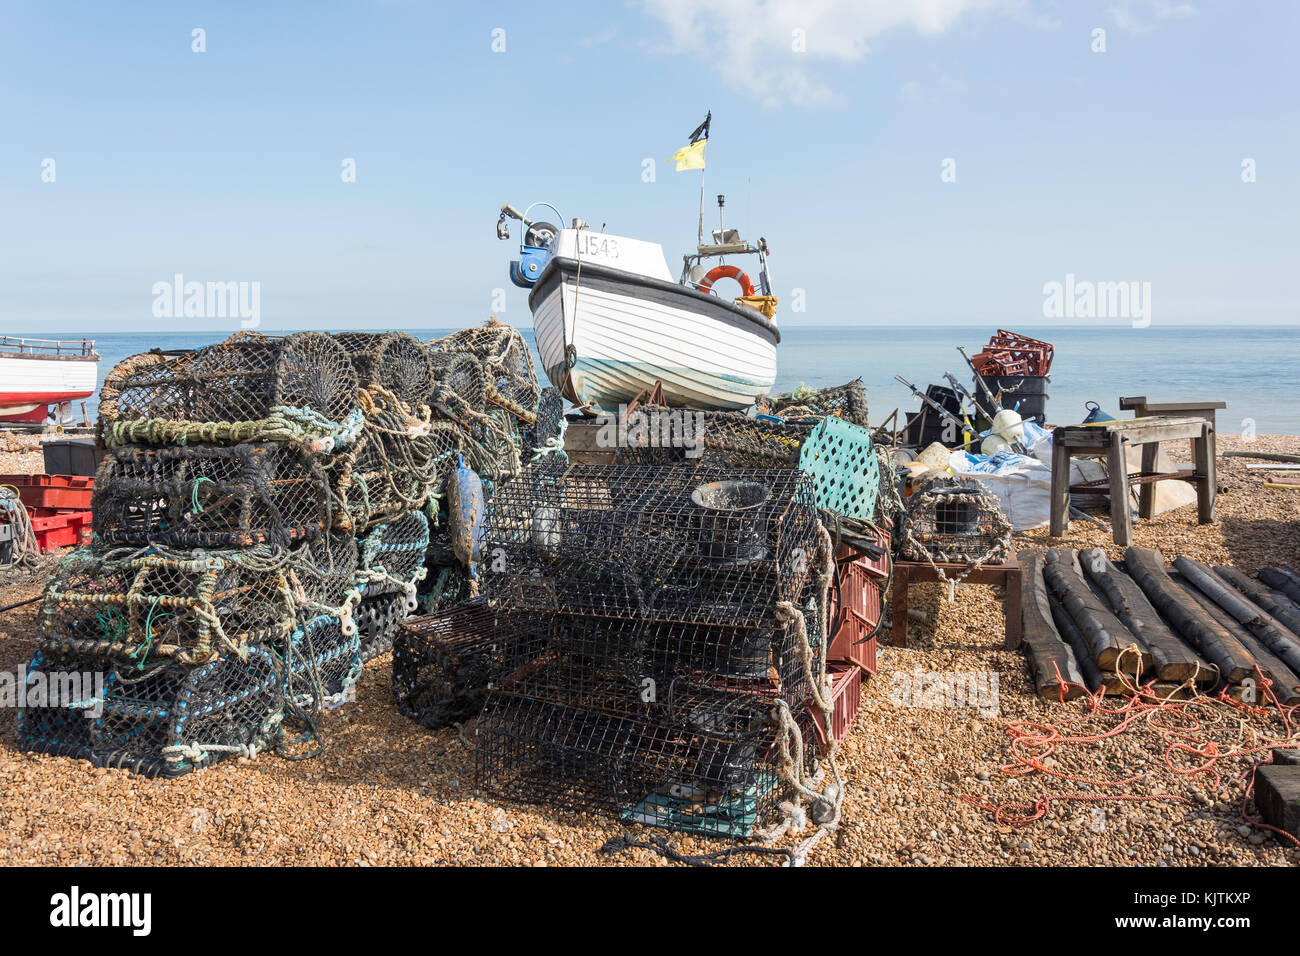 Lobster Pot e barche da pesca sulla spiaggia, trattare, Kent, England, Regno Unito Foto Stock